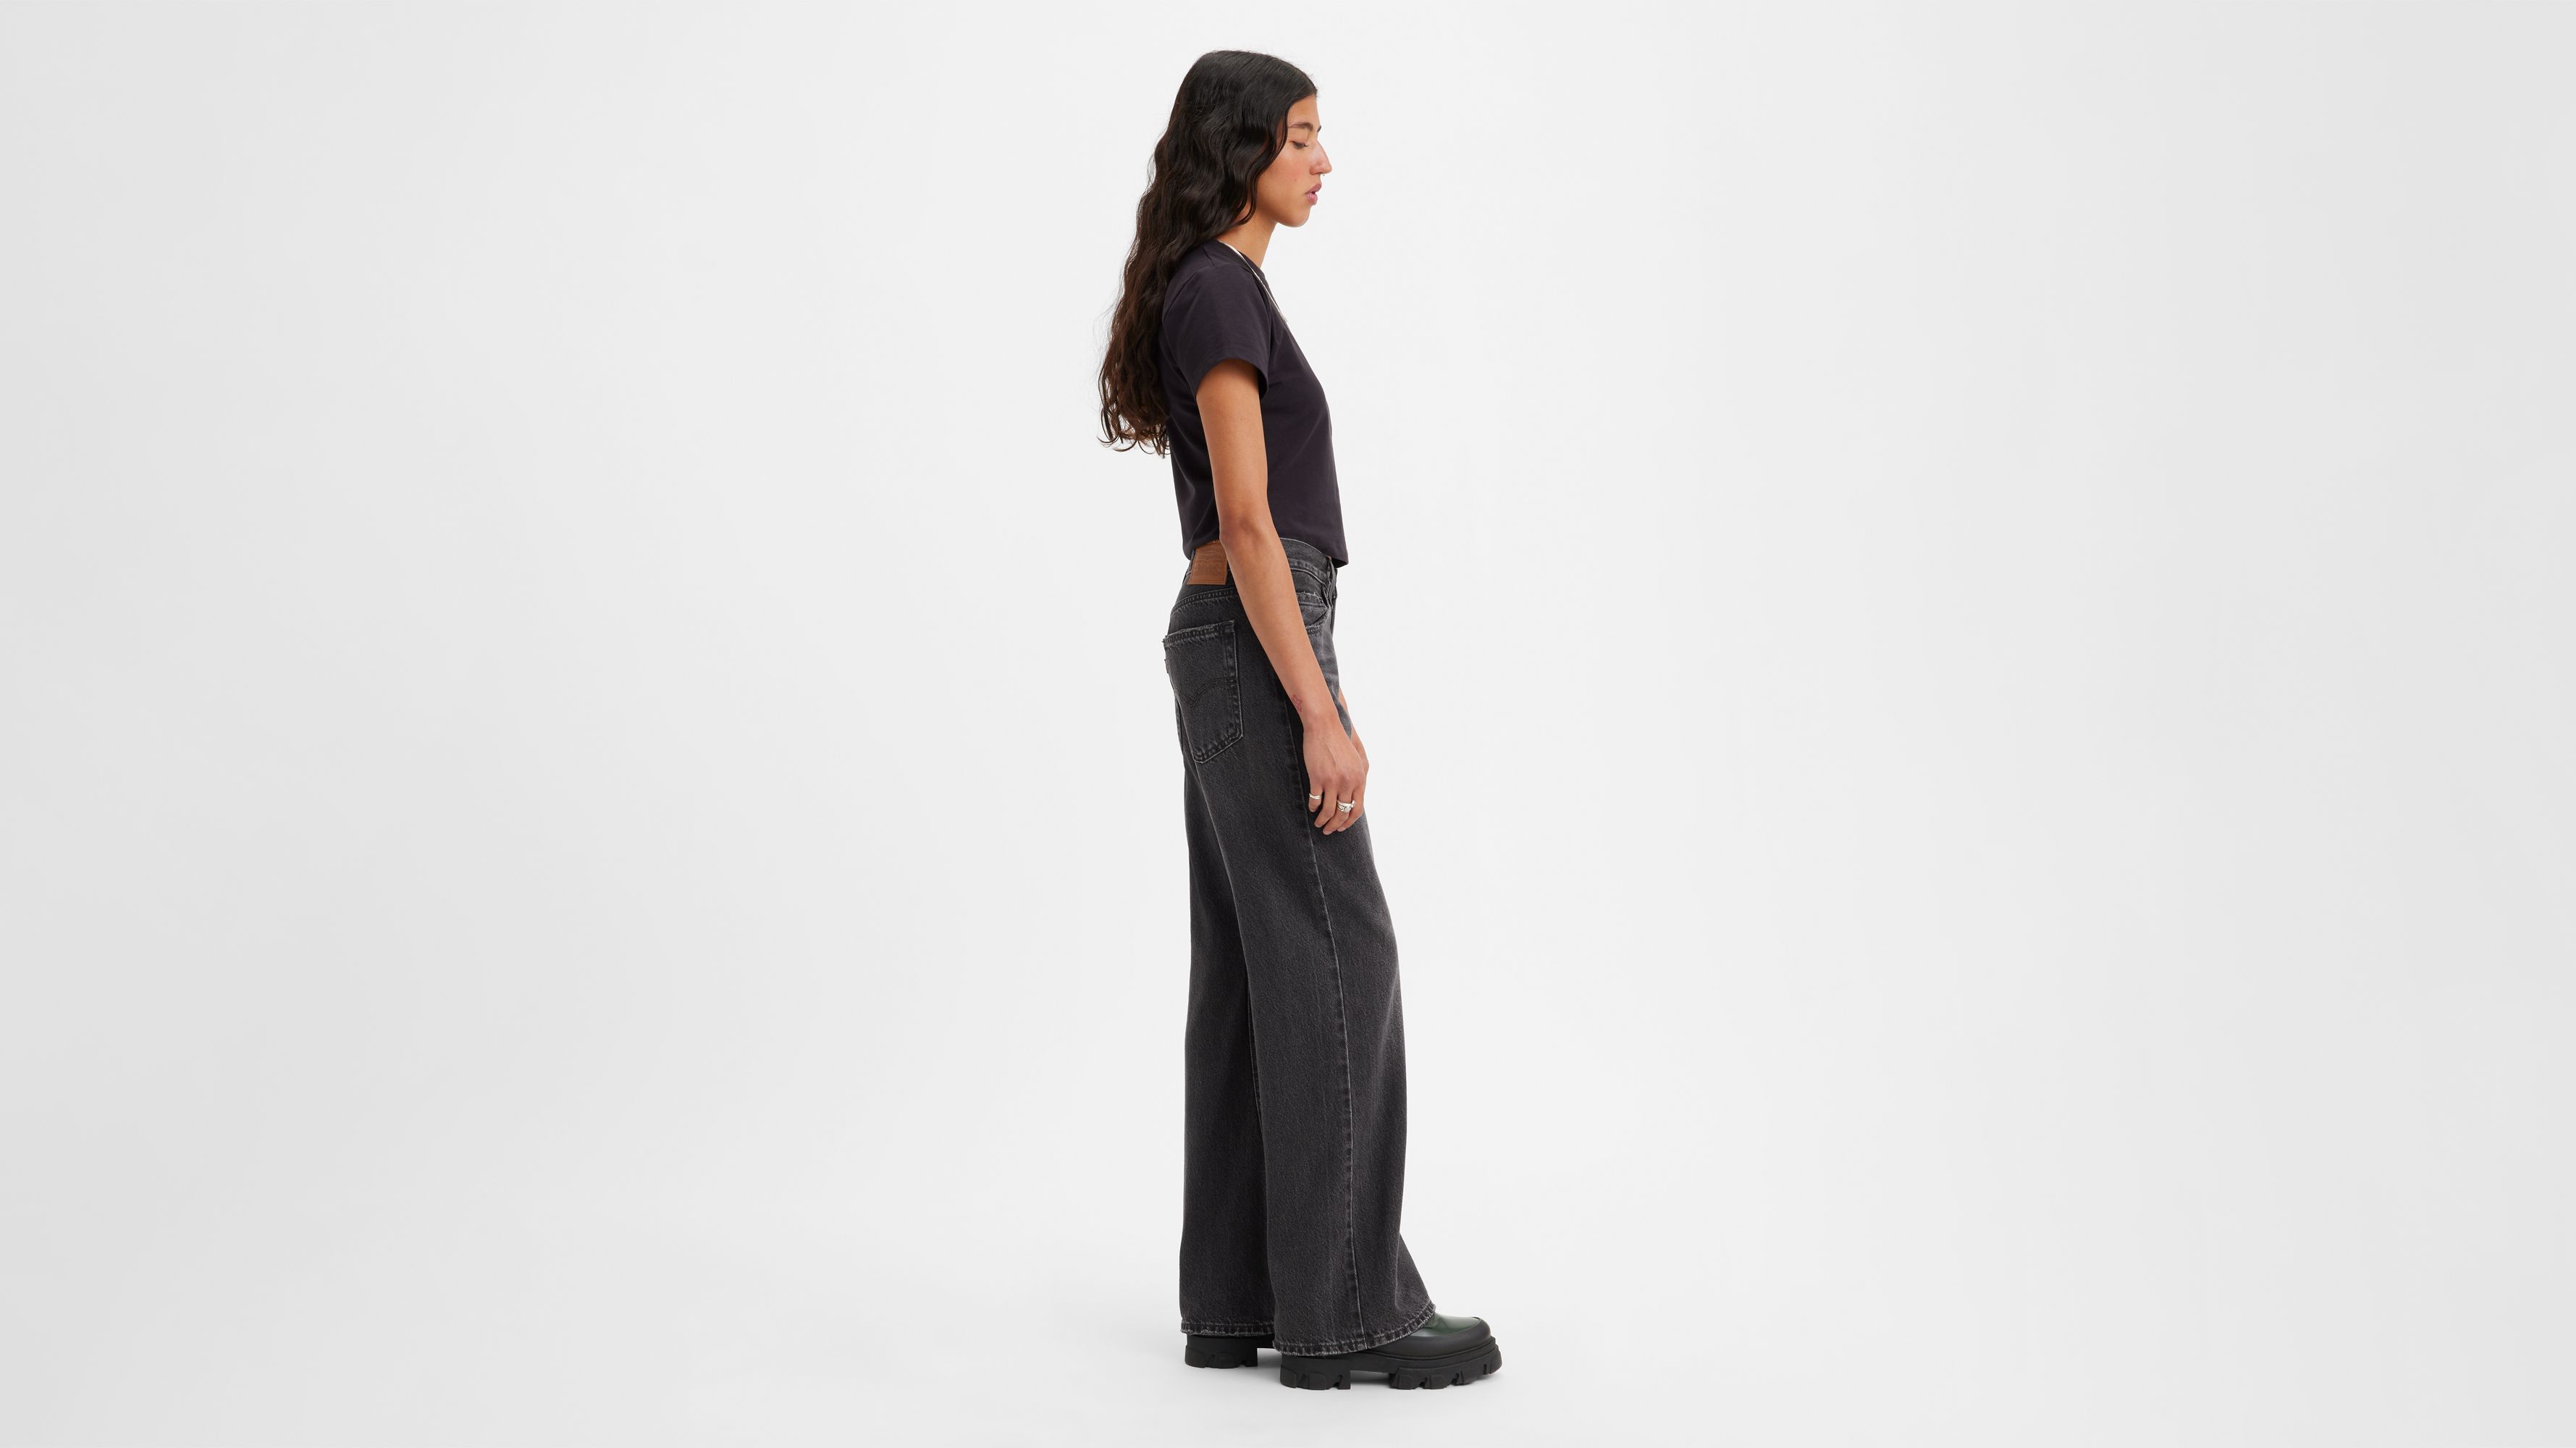 Baggy Bootcut Women's Jeans - Black | Levi's® US